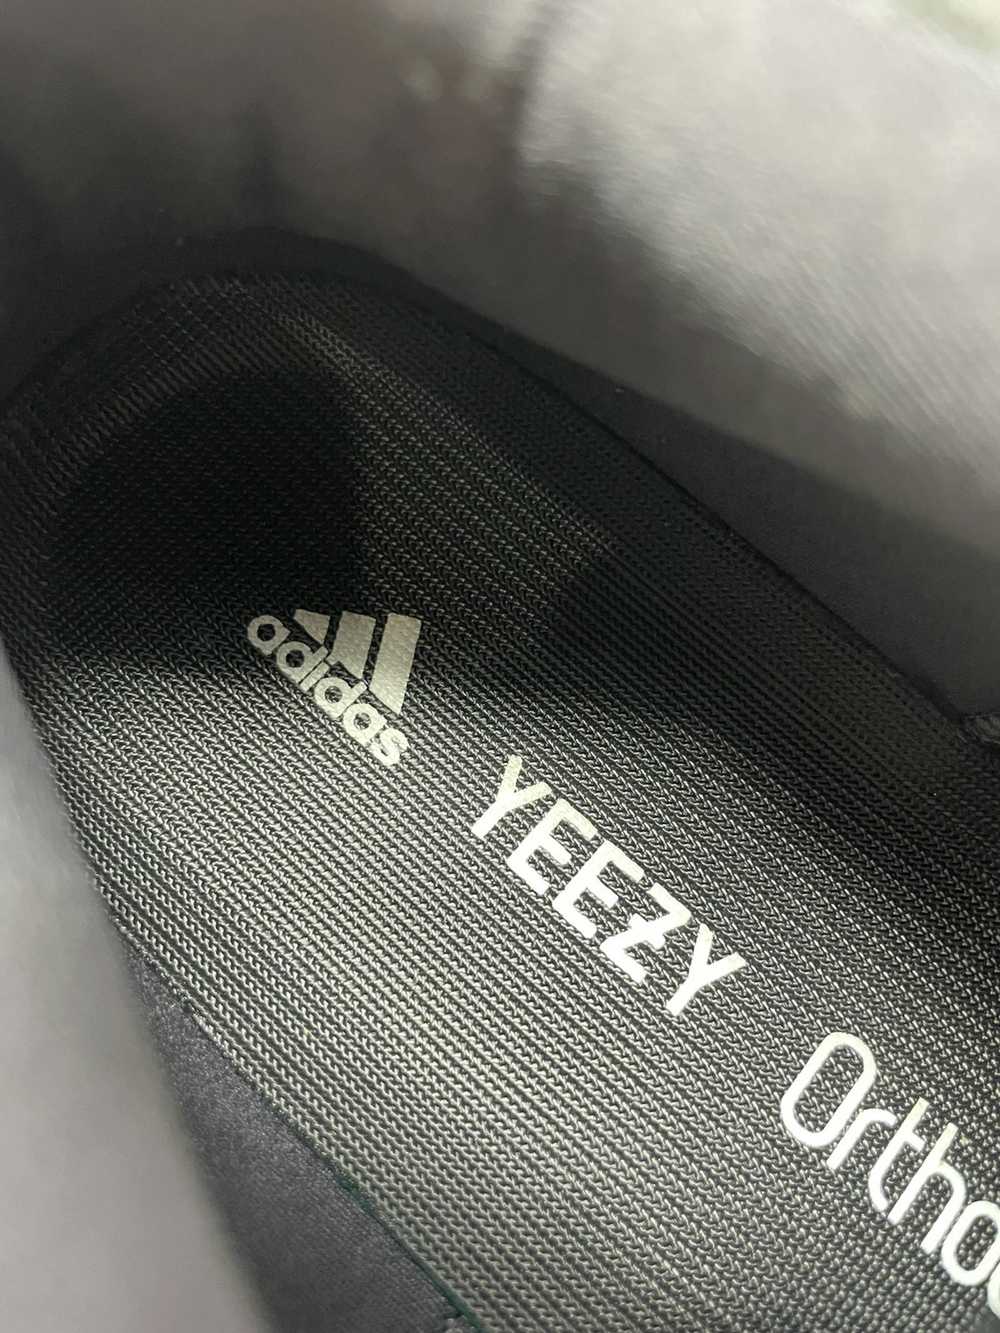 Adidas Yeezy 500 Utility Black - image 8